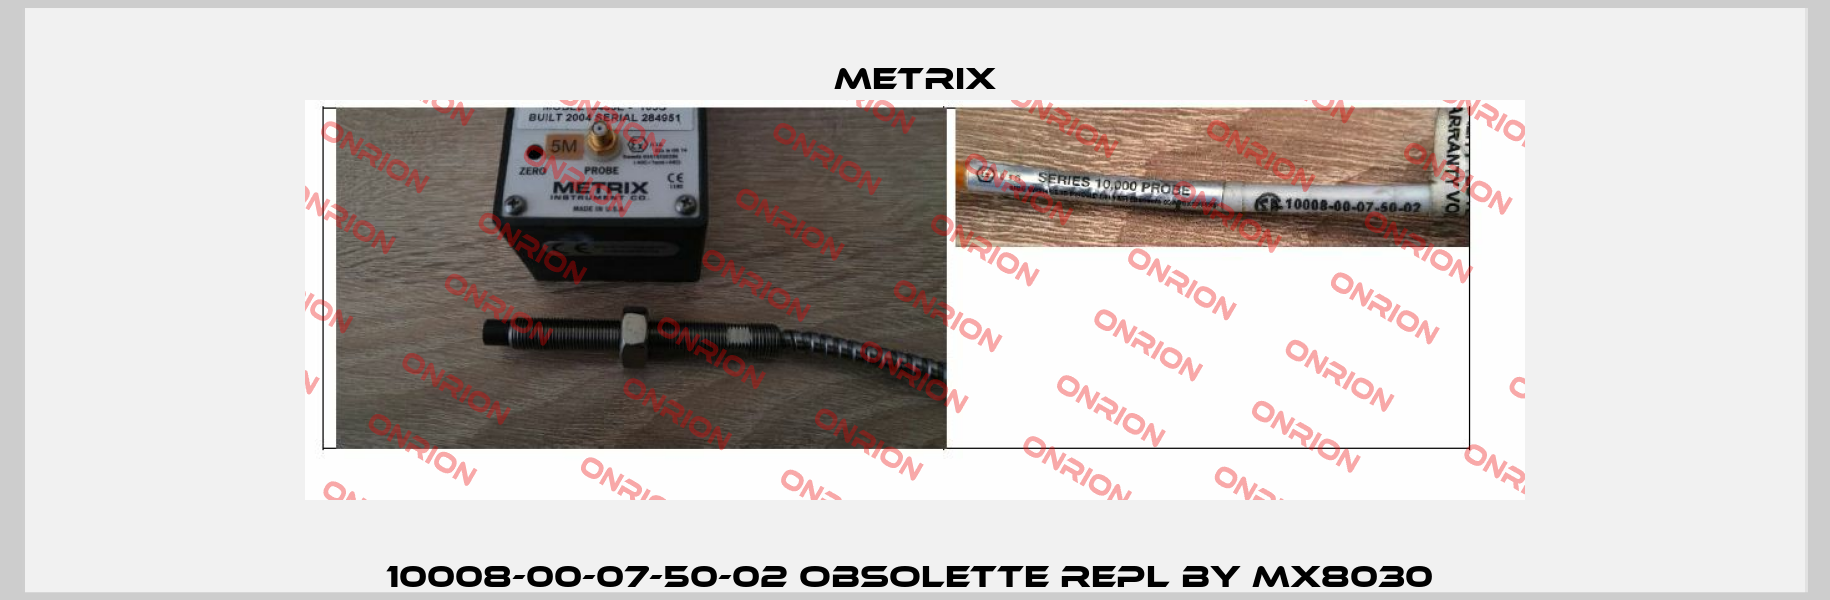 10008-00-07-50-02 OBSOLETTE REPL BY MX8030  Metrix